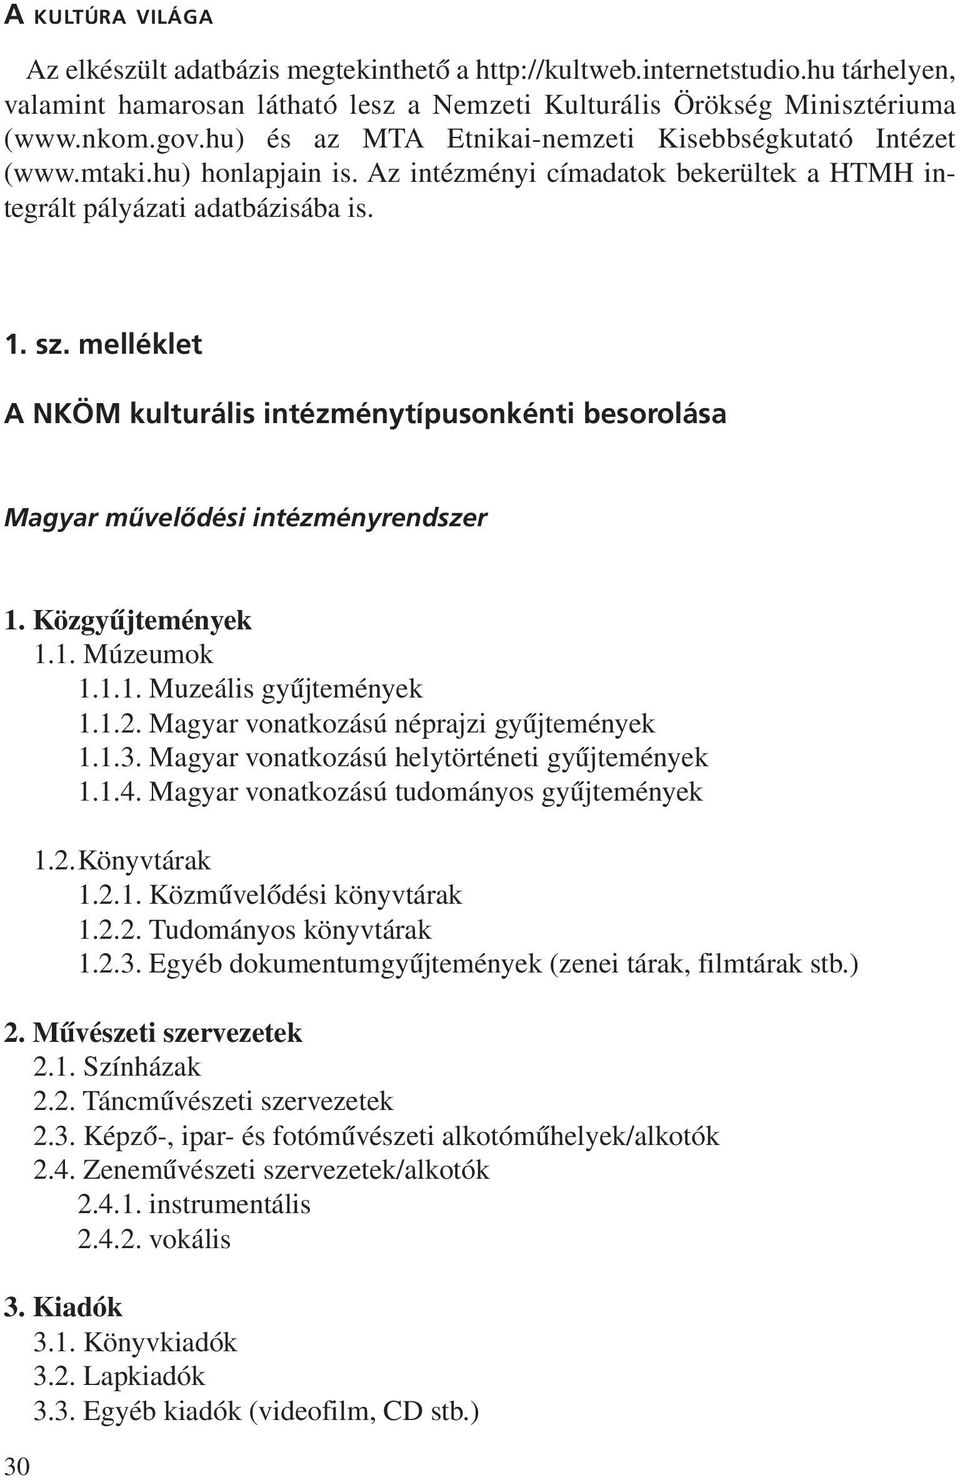 melléklet A NKÖM kulturális intézménytípusonkénti besorolása Magyar mûvelõdési intézményrendszer 1. Közgyûjtemények 1.1. Múzeumok 1.1.1. Muzeális gyûjtemények 1.1.2.